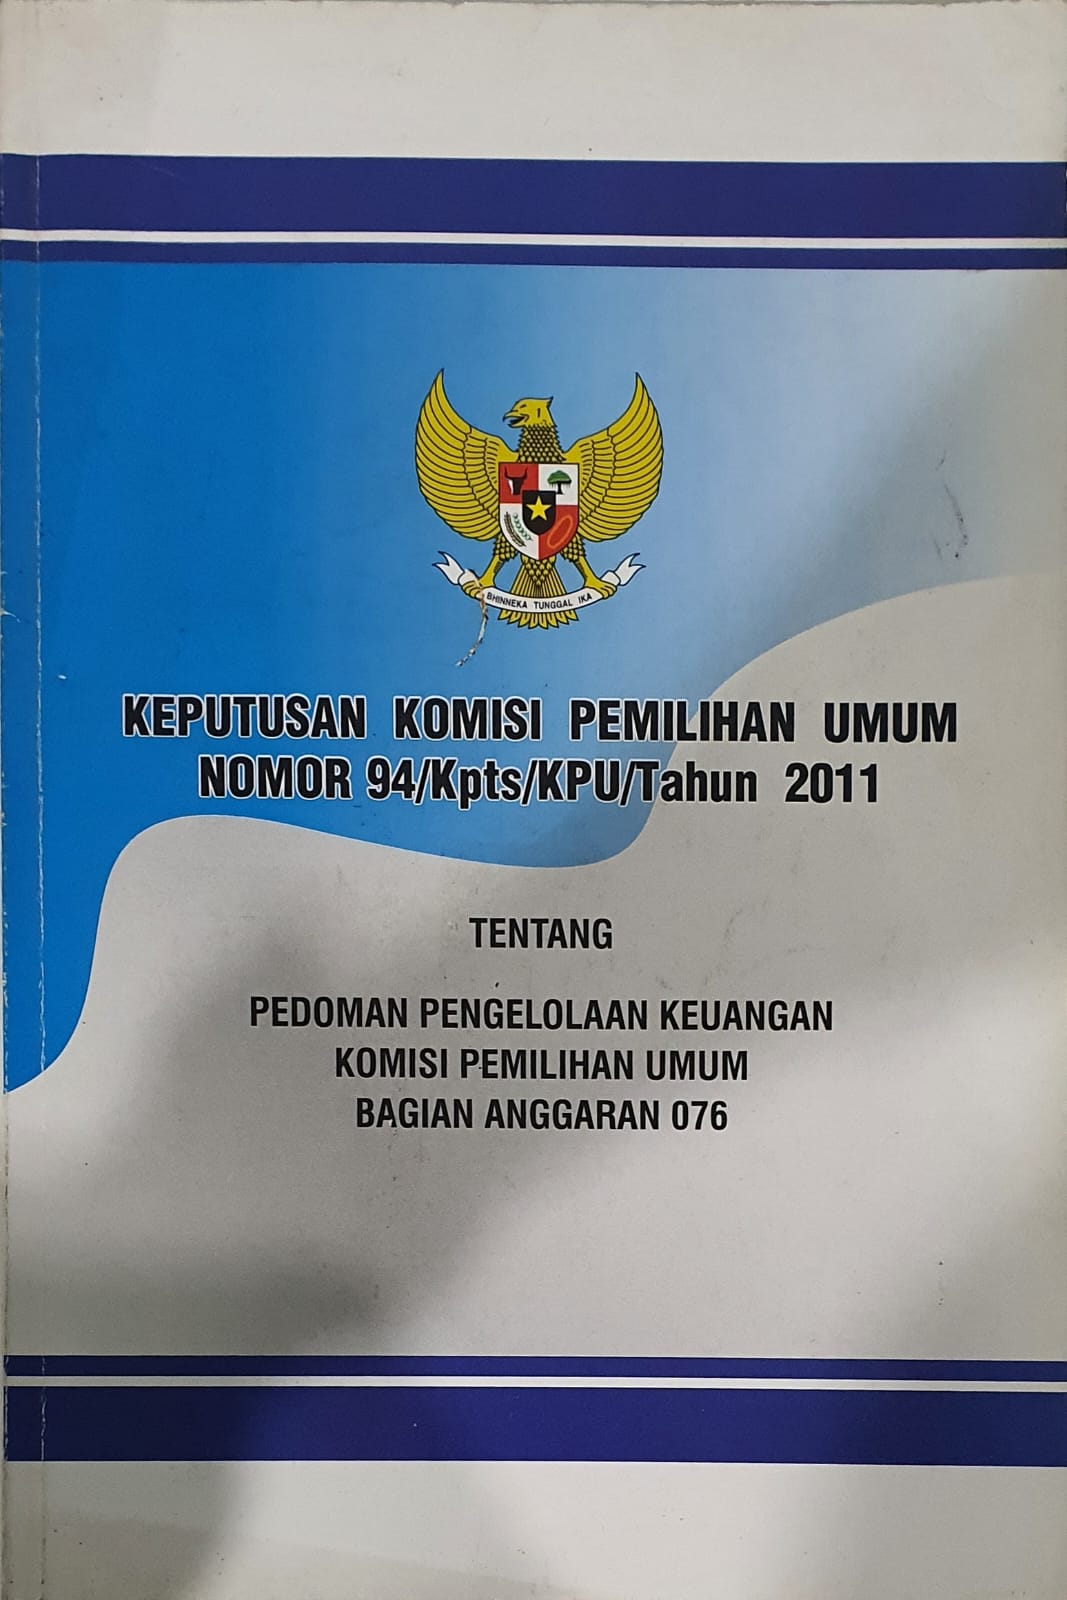 Keputusan Komisi Pemilihan Umum Nomor 94/Kpts/KPU/Tahun 2011 tentang Pedoman Pengelolaan Keuangan Komisi Pemilihan Umum Bagian Anggaran 076